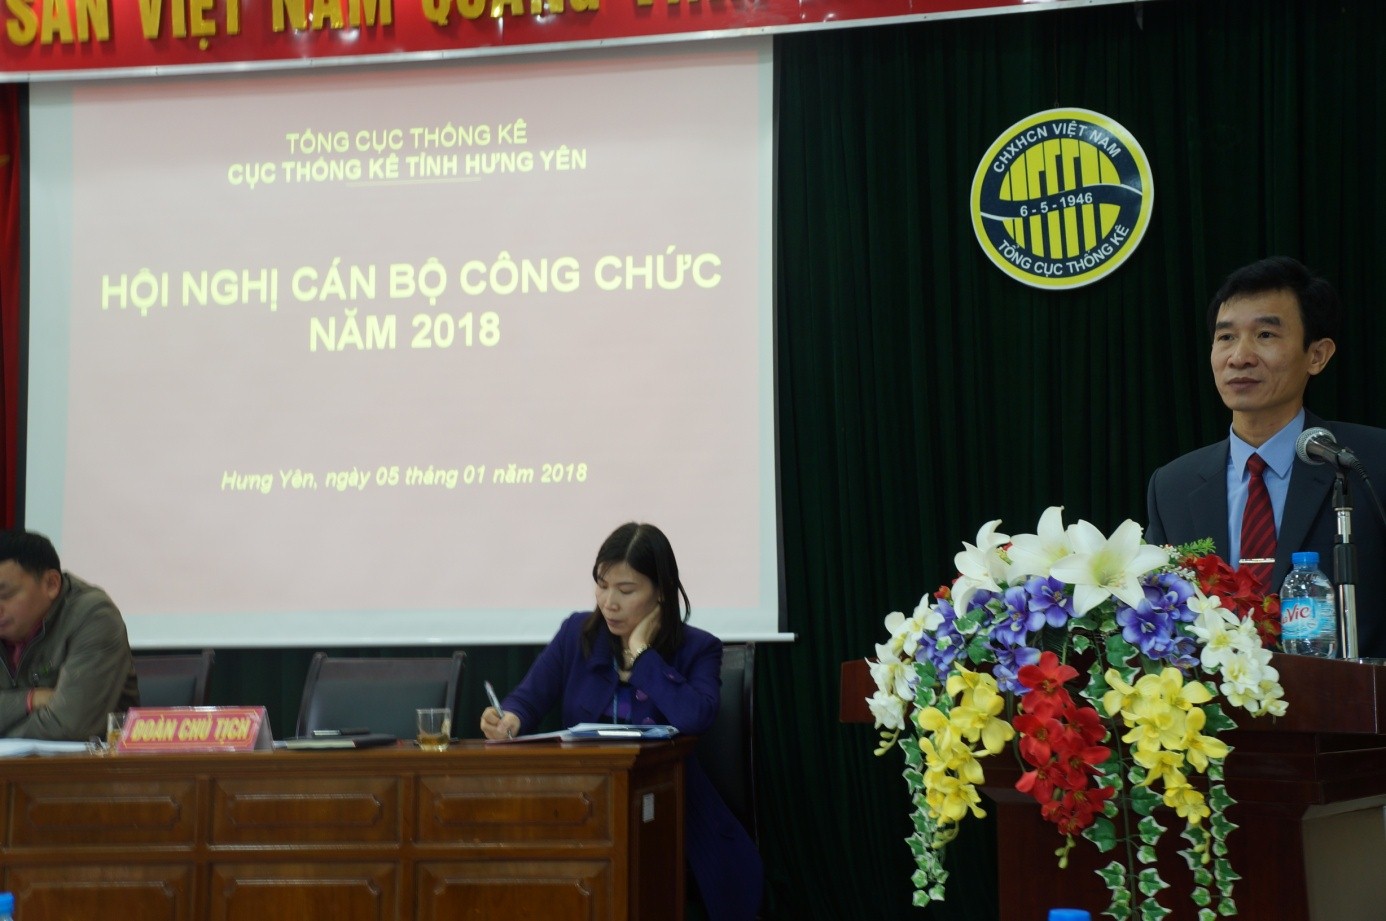 Ông Đào Trọng Truyến – Bí thư Chi bộ, Cục trưởng Cục Thống kê Hưng Yên phát biểu và kết luận Hội nghị